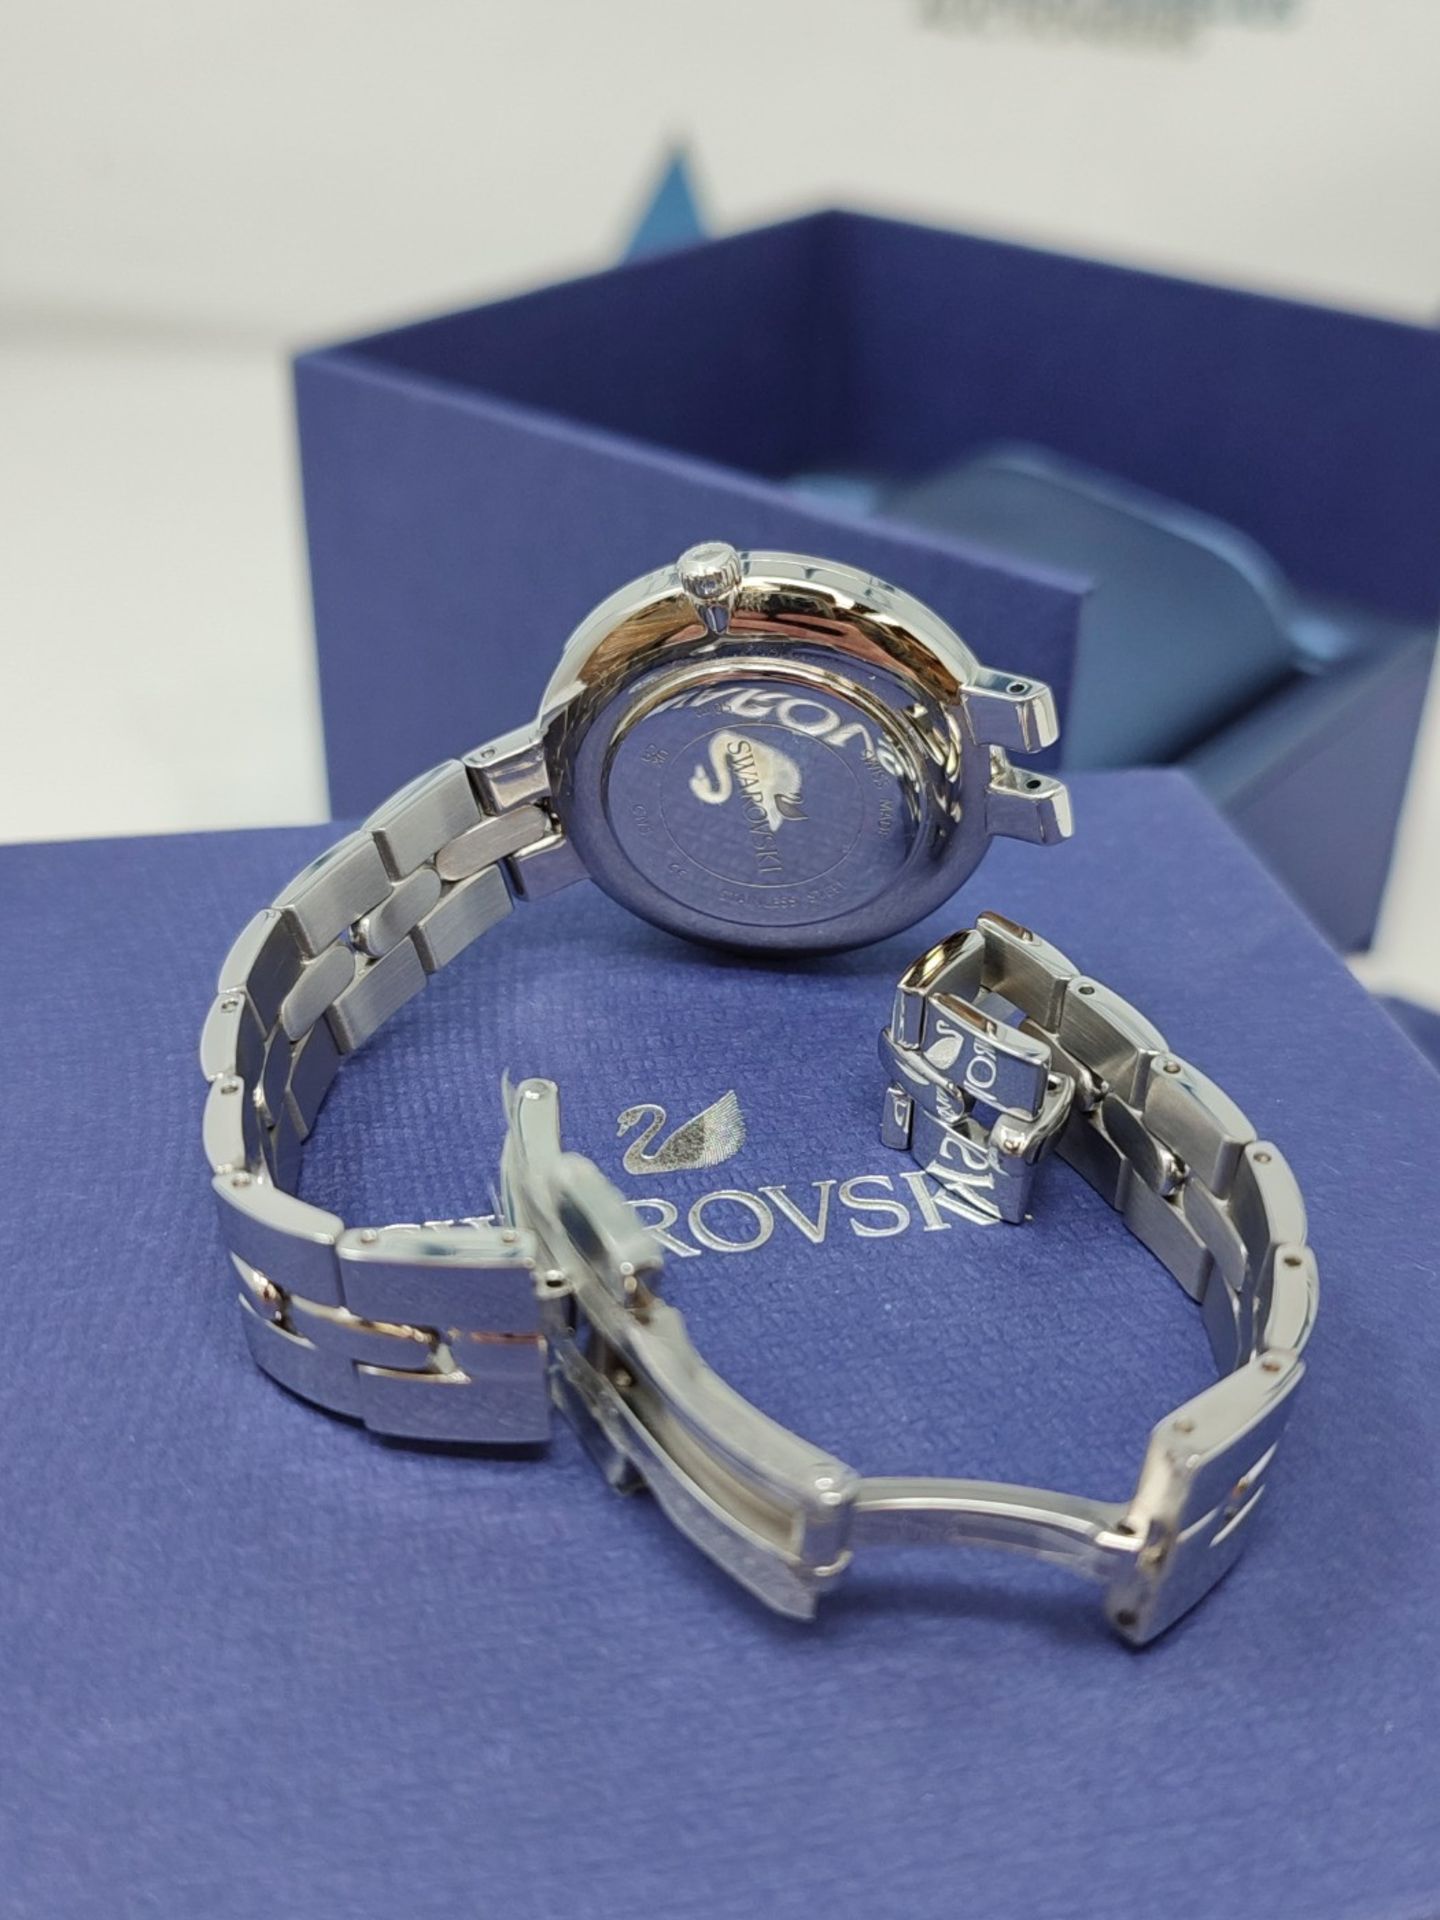 RRP £158.00 Swarovski Cosmopolitan watch, metal bracelet, silver-colored, stainless steel - Image 6 of 6